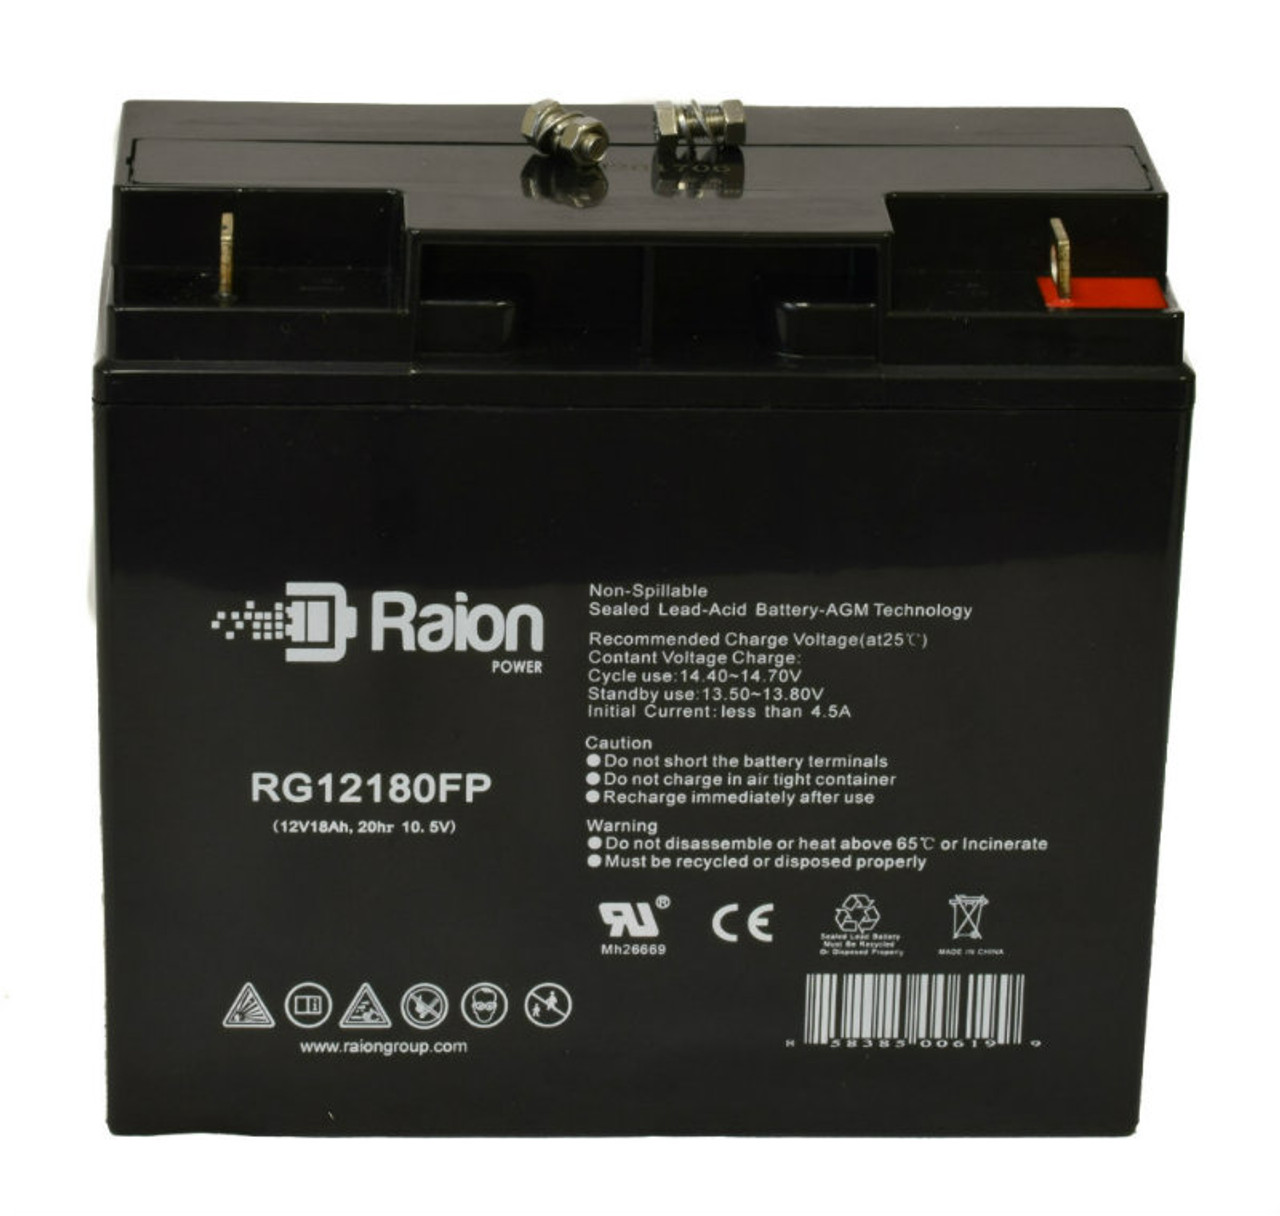 Raion Power RG12180FP 12V 18Ah Lead Acid Battery for Oracle FS12180